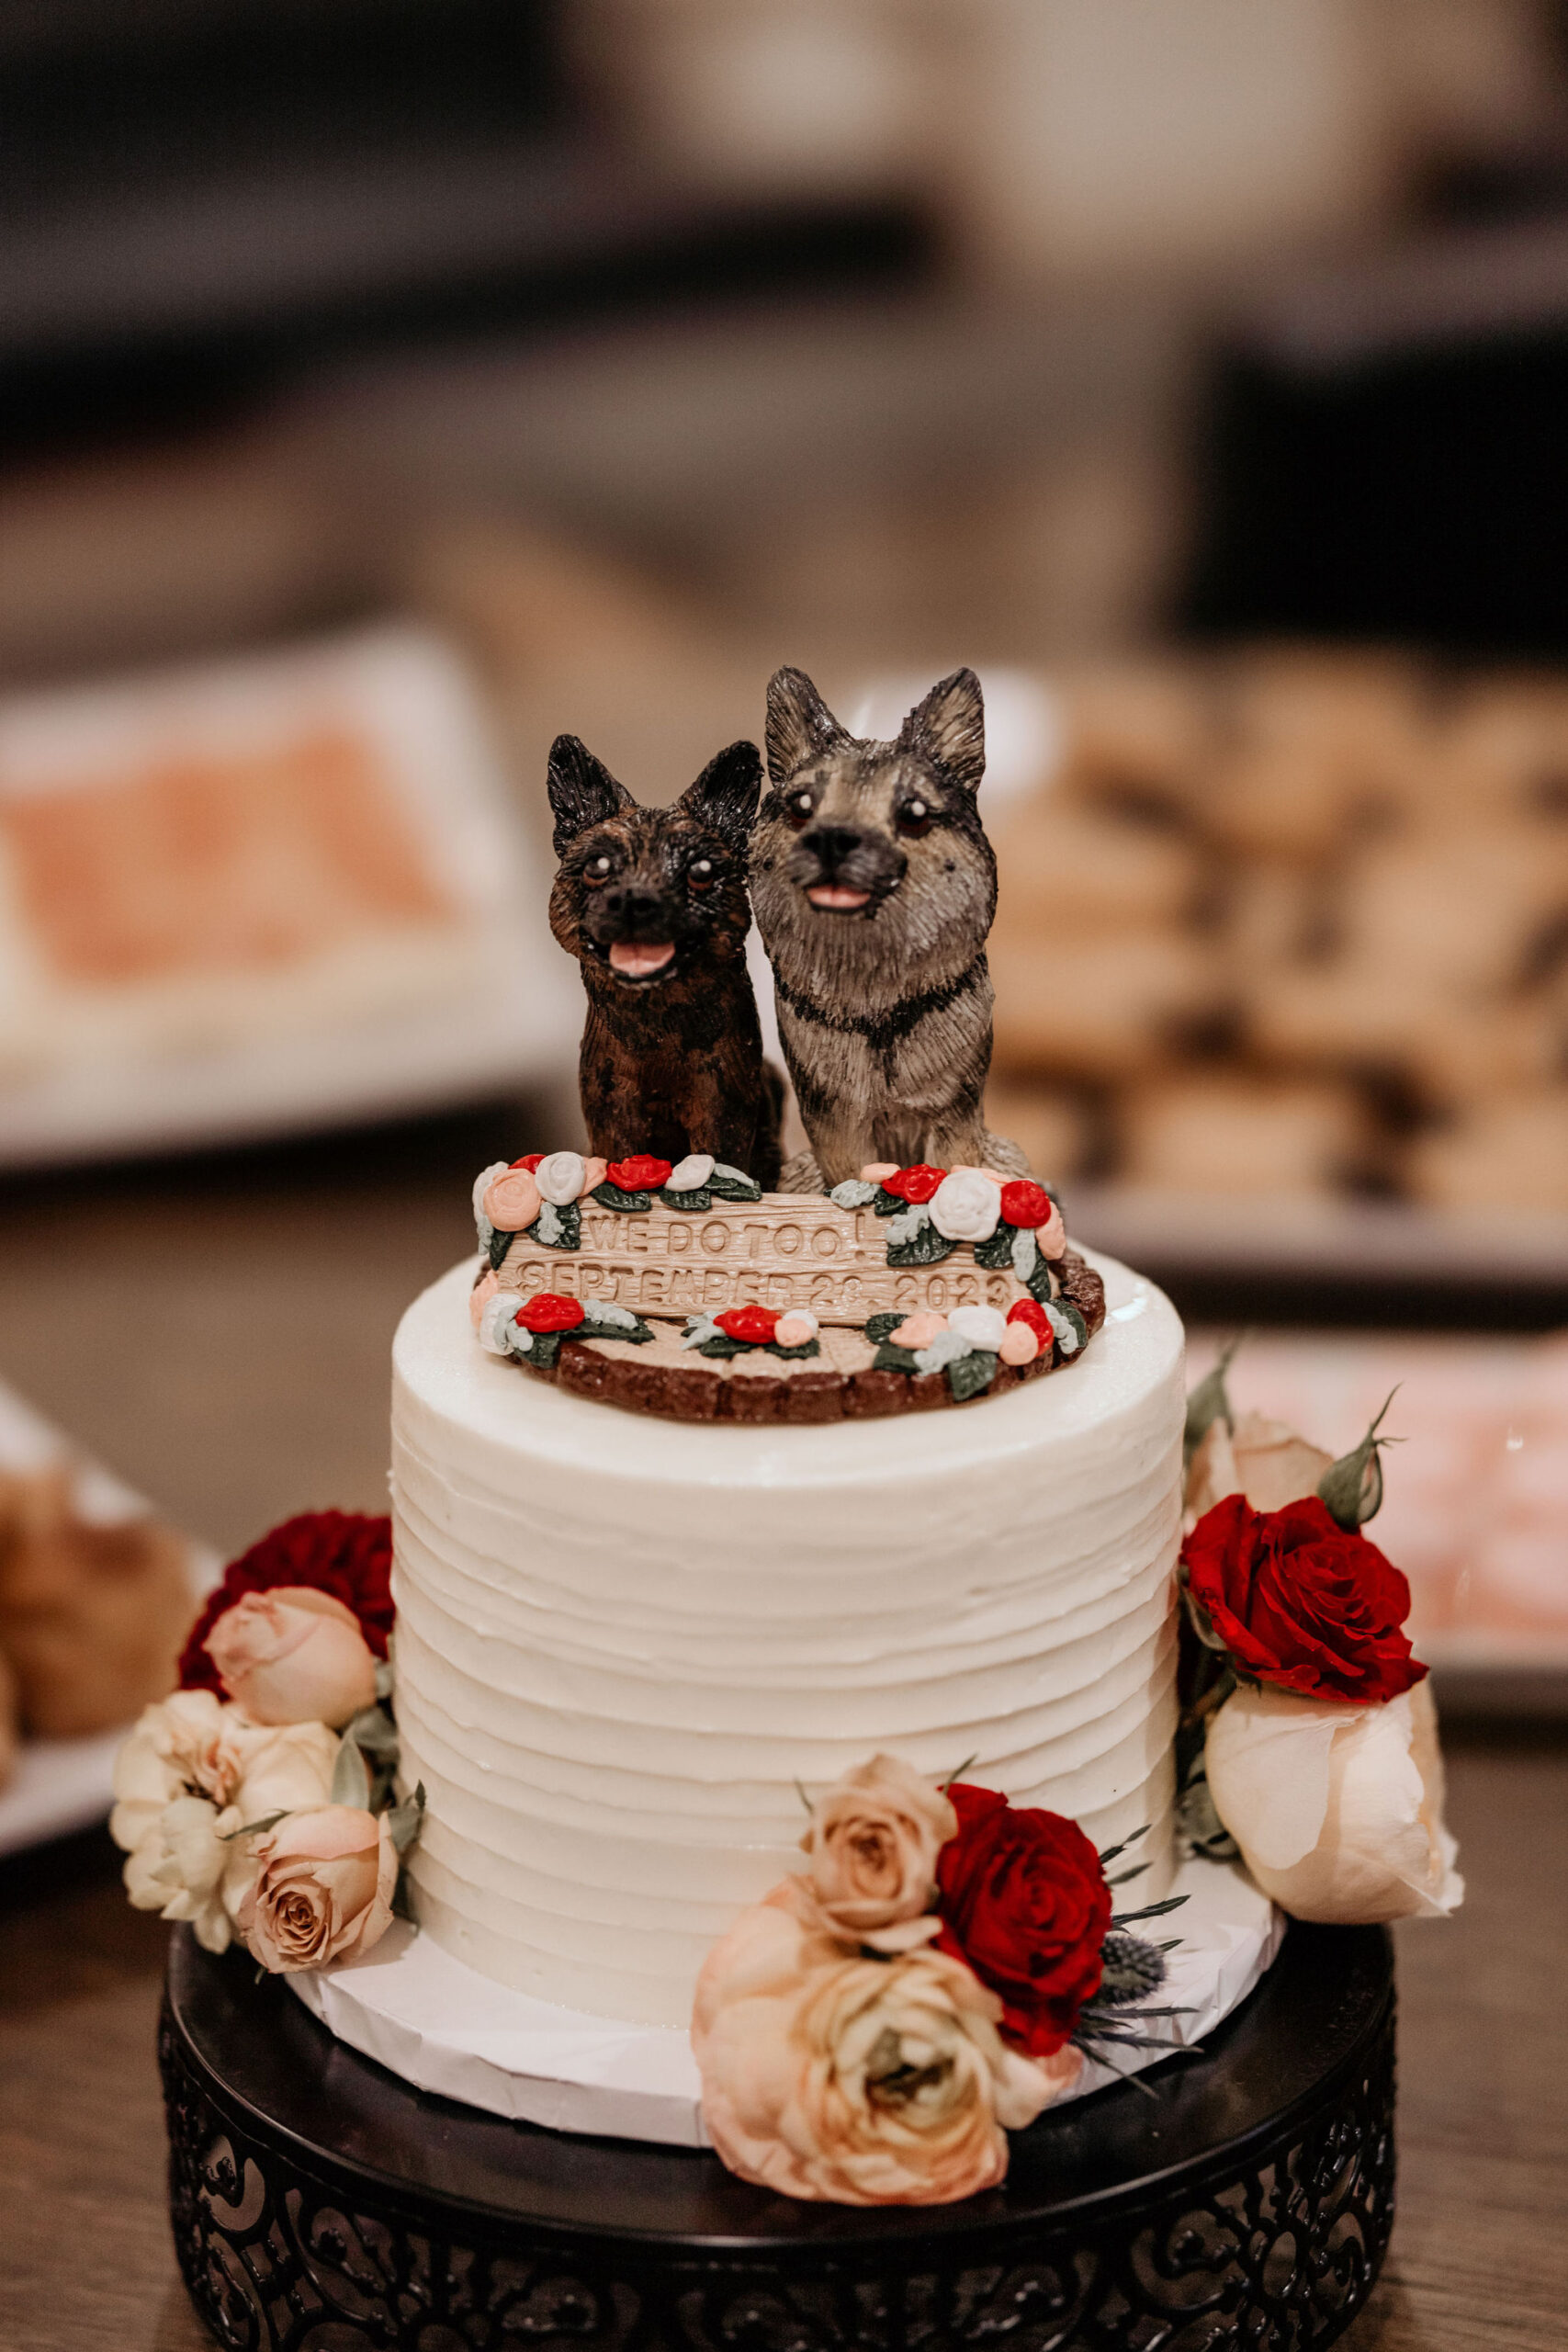 wedding cake with dog topper, made by colorado wedding vendor.